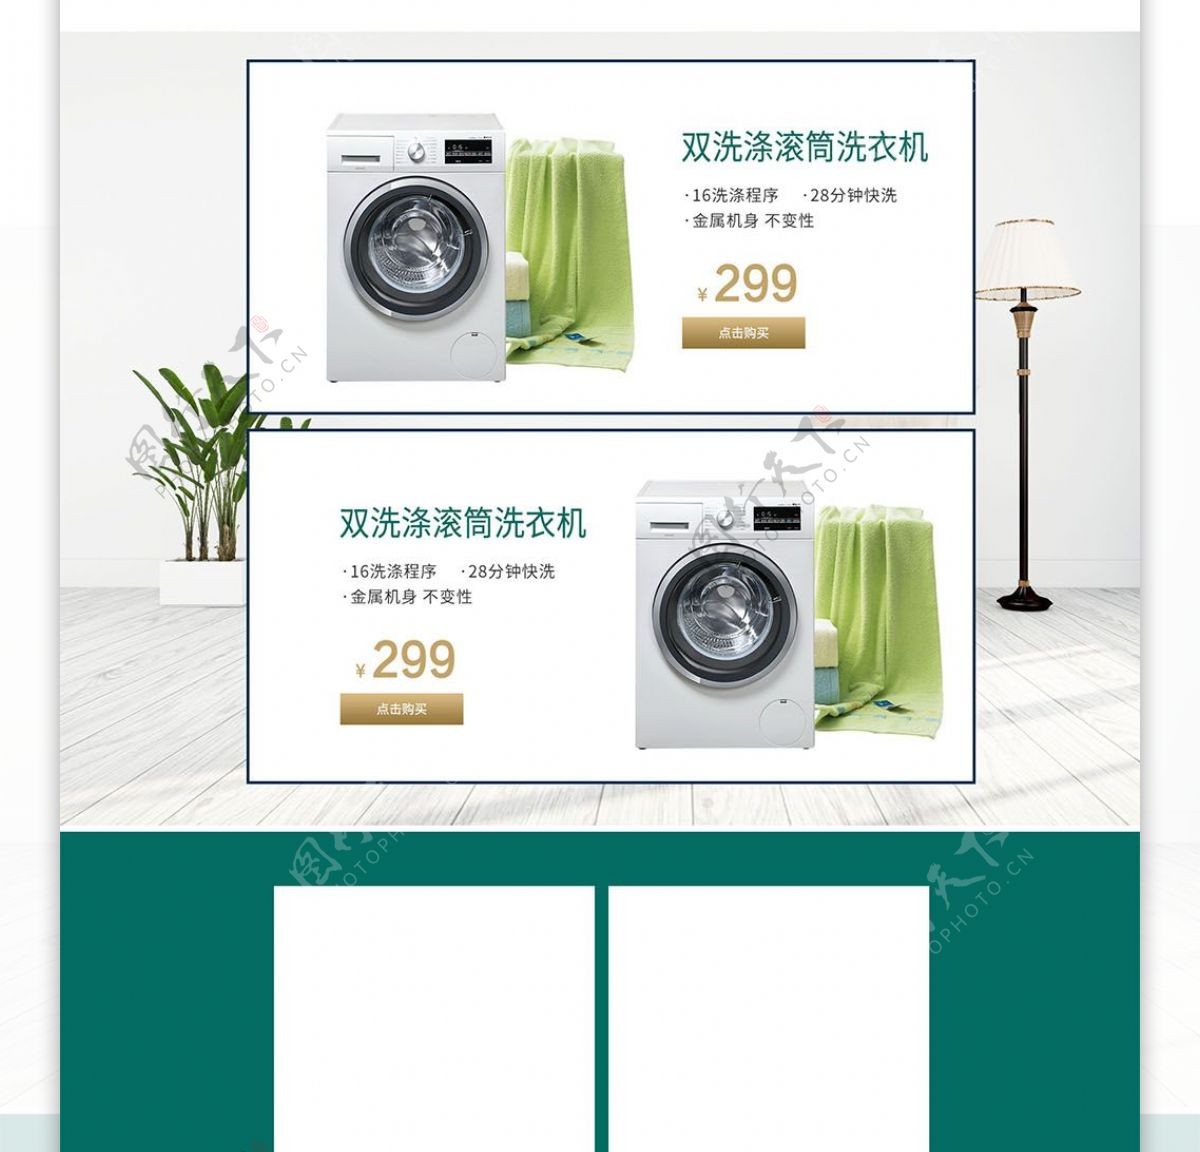 淘宝天猫绿色简约商务风格洗衣机首页